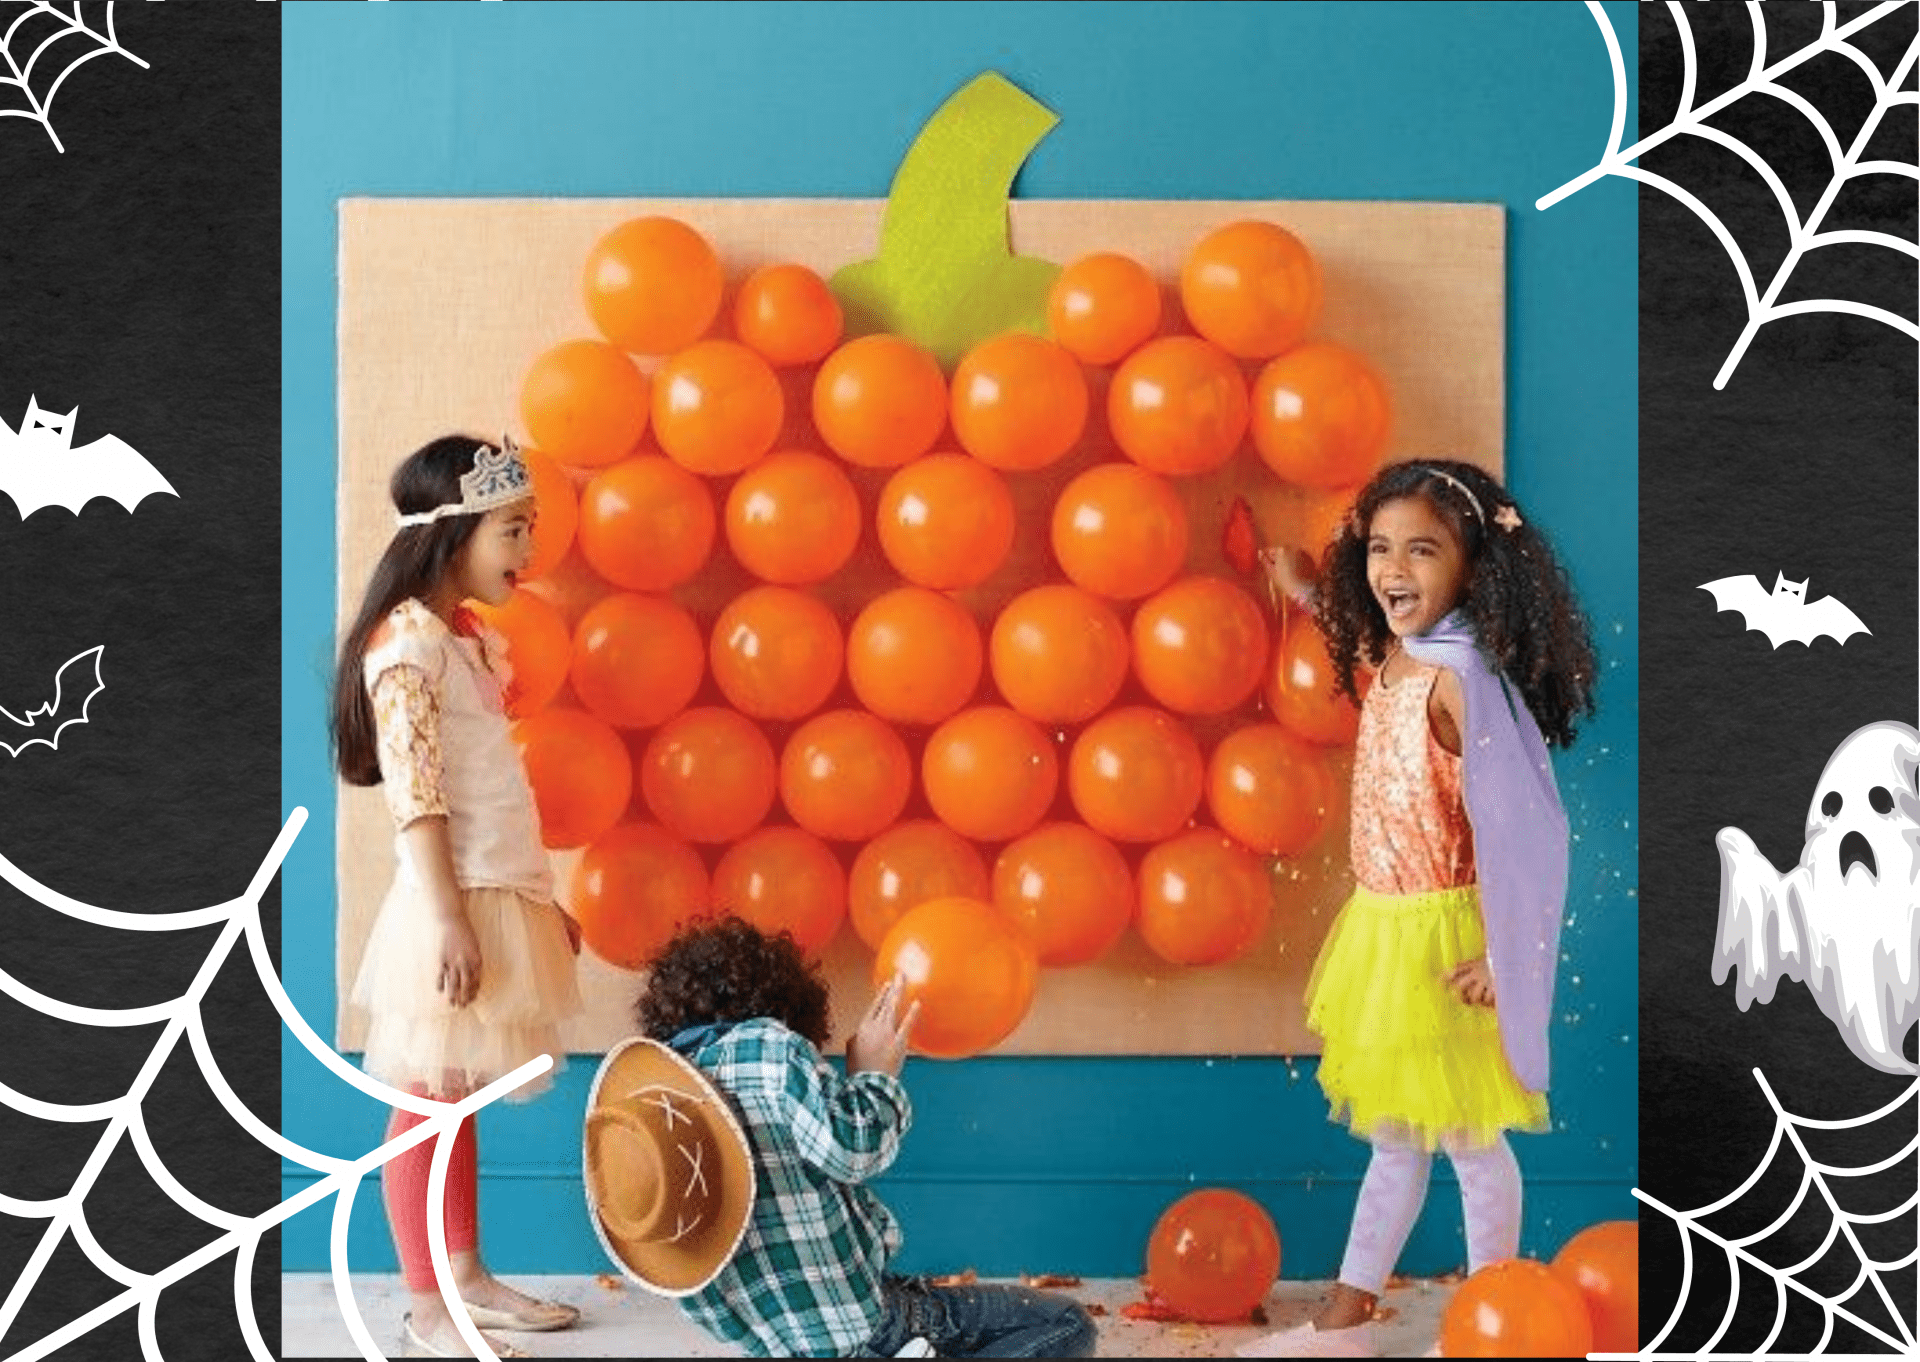 Have a few games involving balloons, such as a Piñata or Balloon Dart Toss.